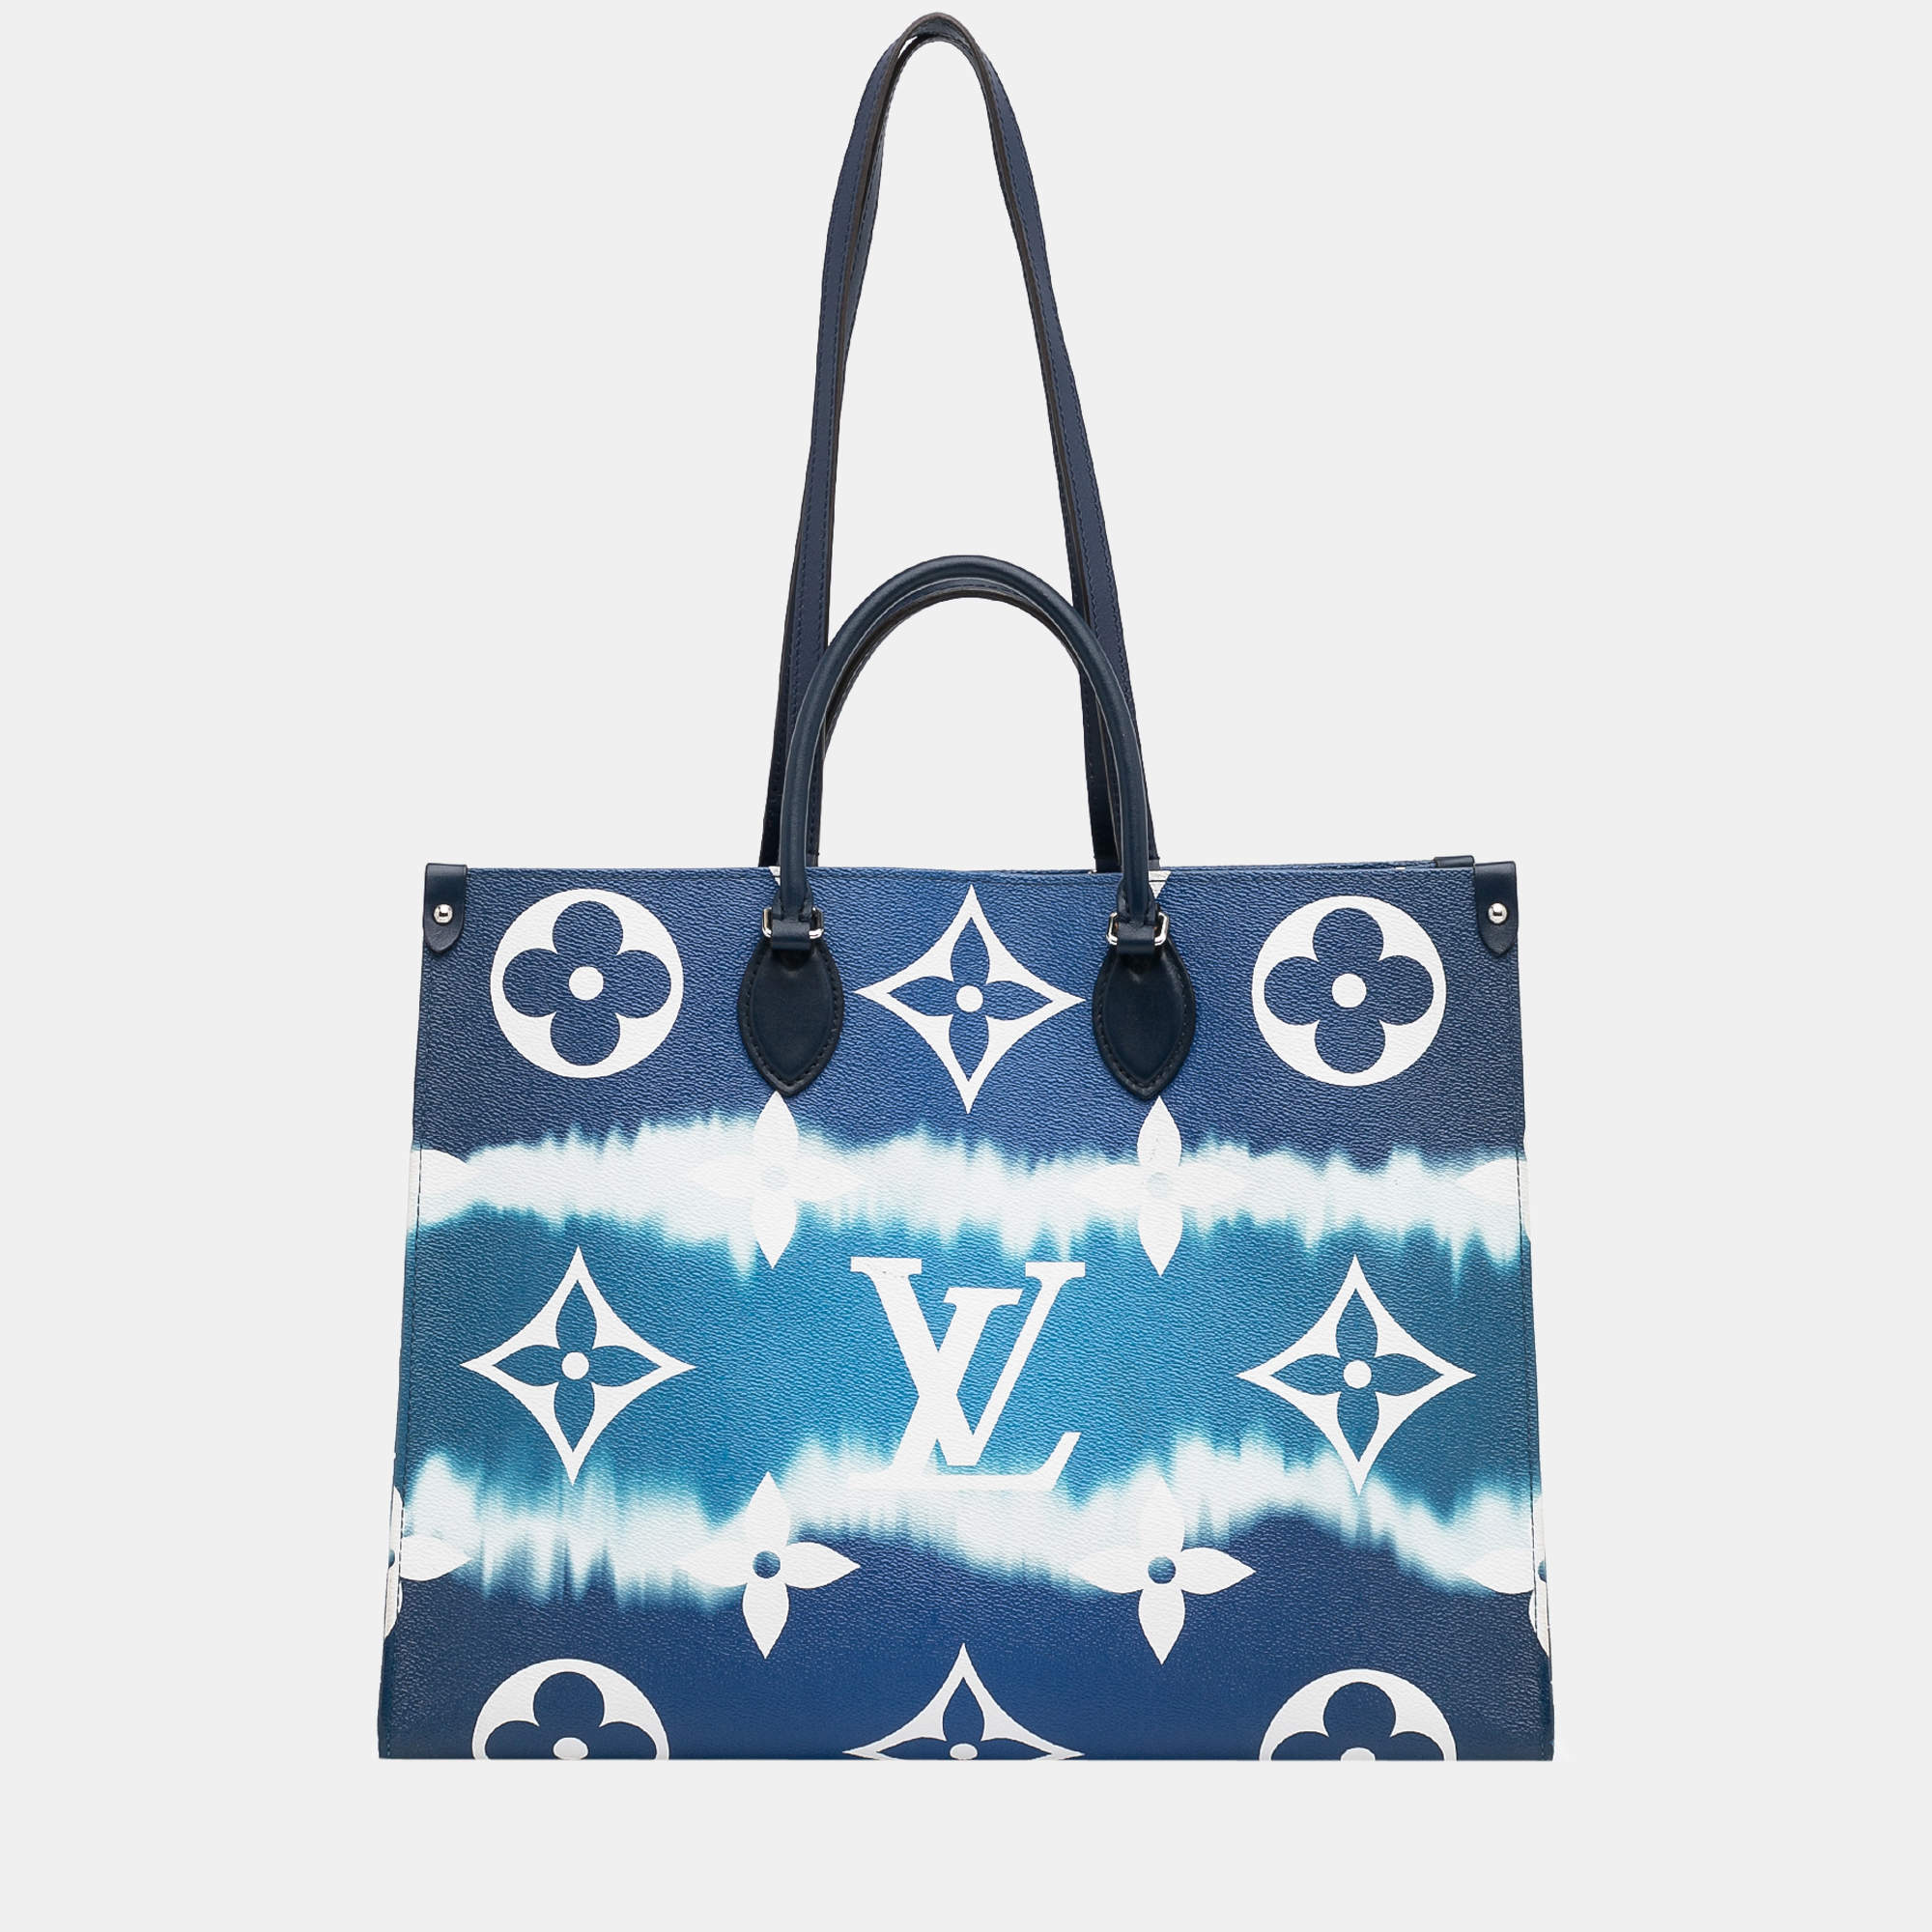 Louis Vuitton Escale Handbag